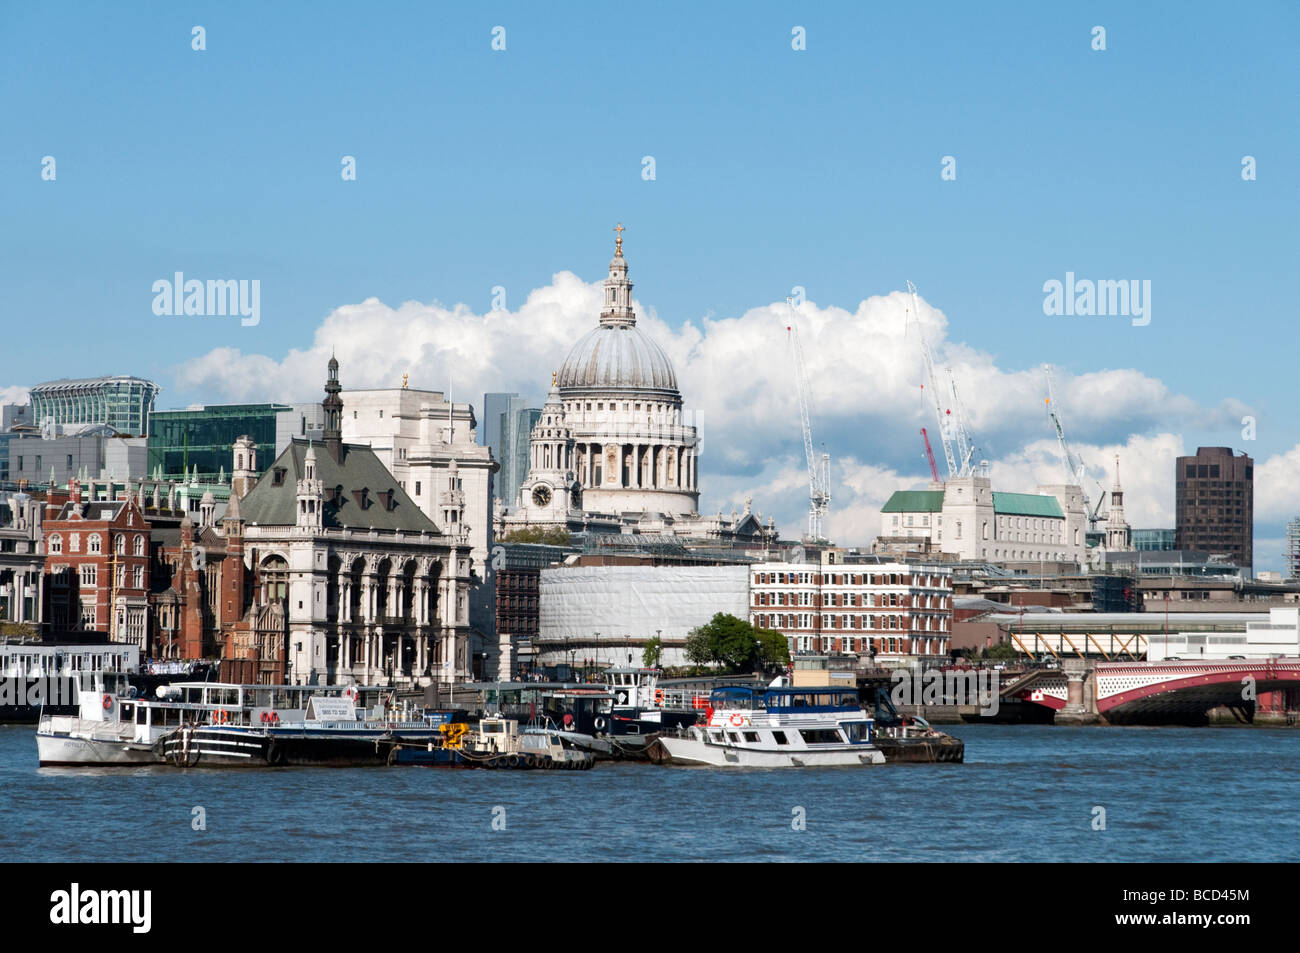 La Cathédrale St Paul et la City de Londres Angleterre Royaume-uni Banque D'Images